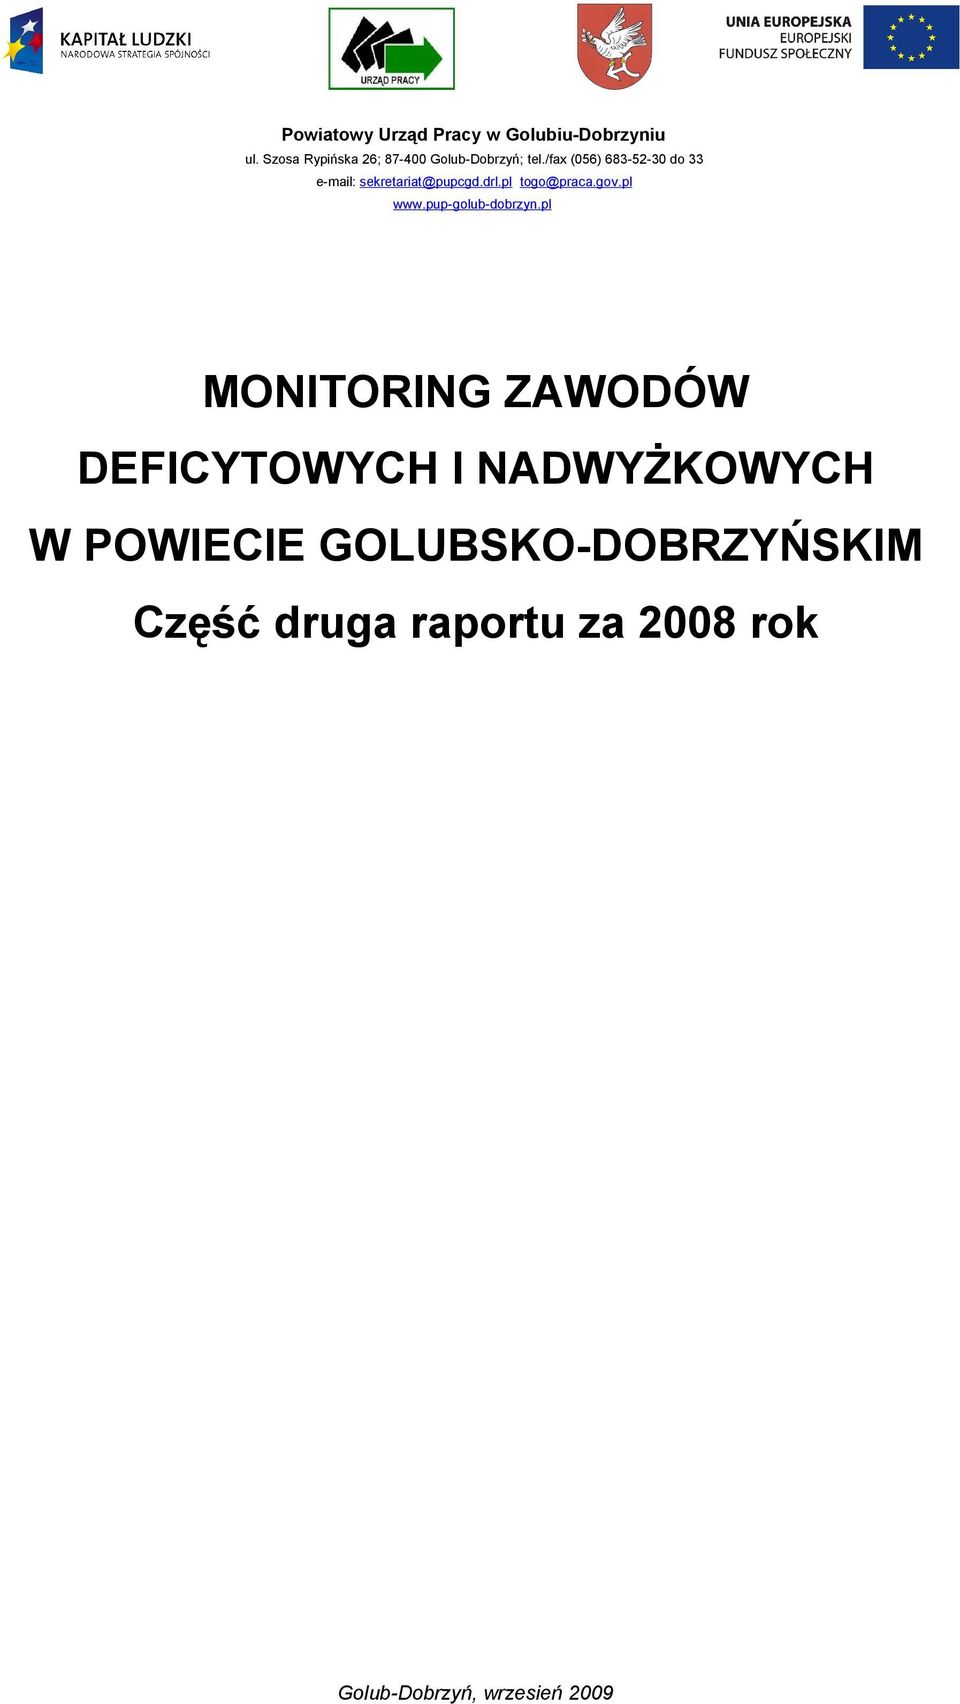 /fax (056) 683-52-30 do 33 e-mail: sekretariat@pupcgd.drl.pl togo@praca.gov.pl www.